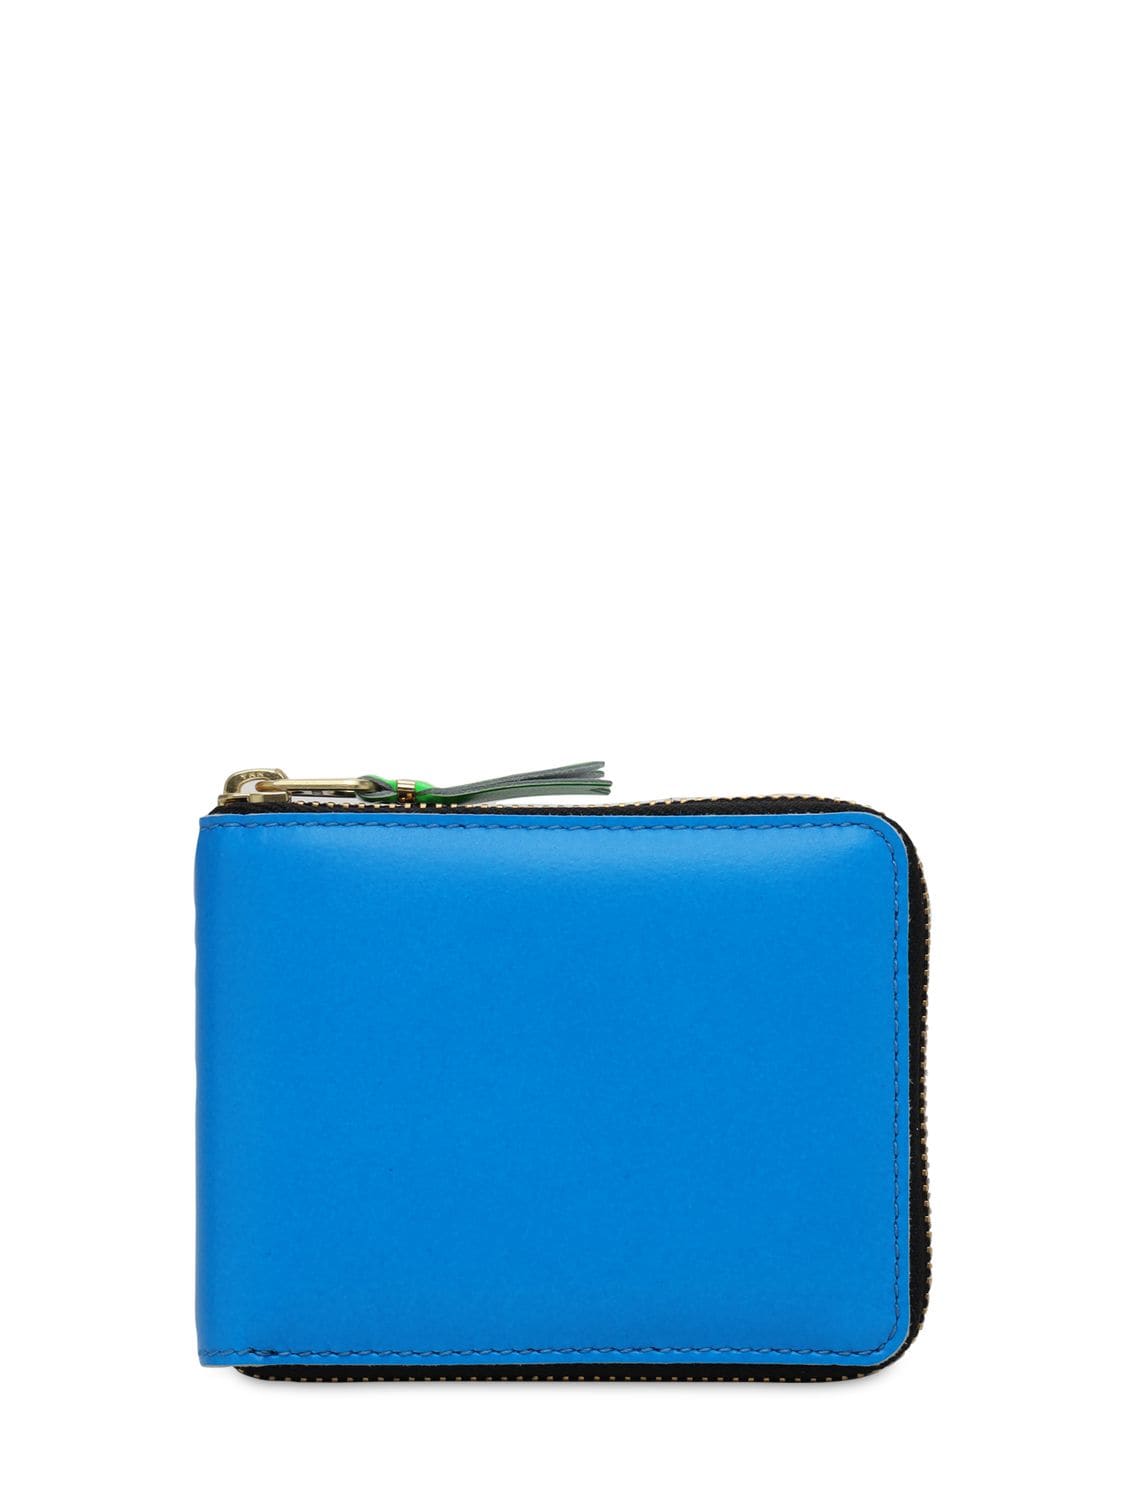 Comme Des Garçons Super Fluo Leather Zip-around Wallet In Blue